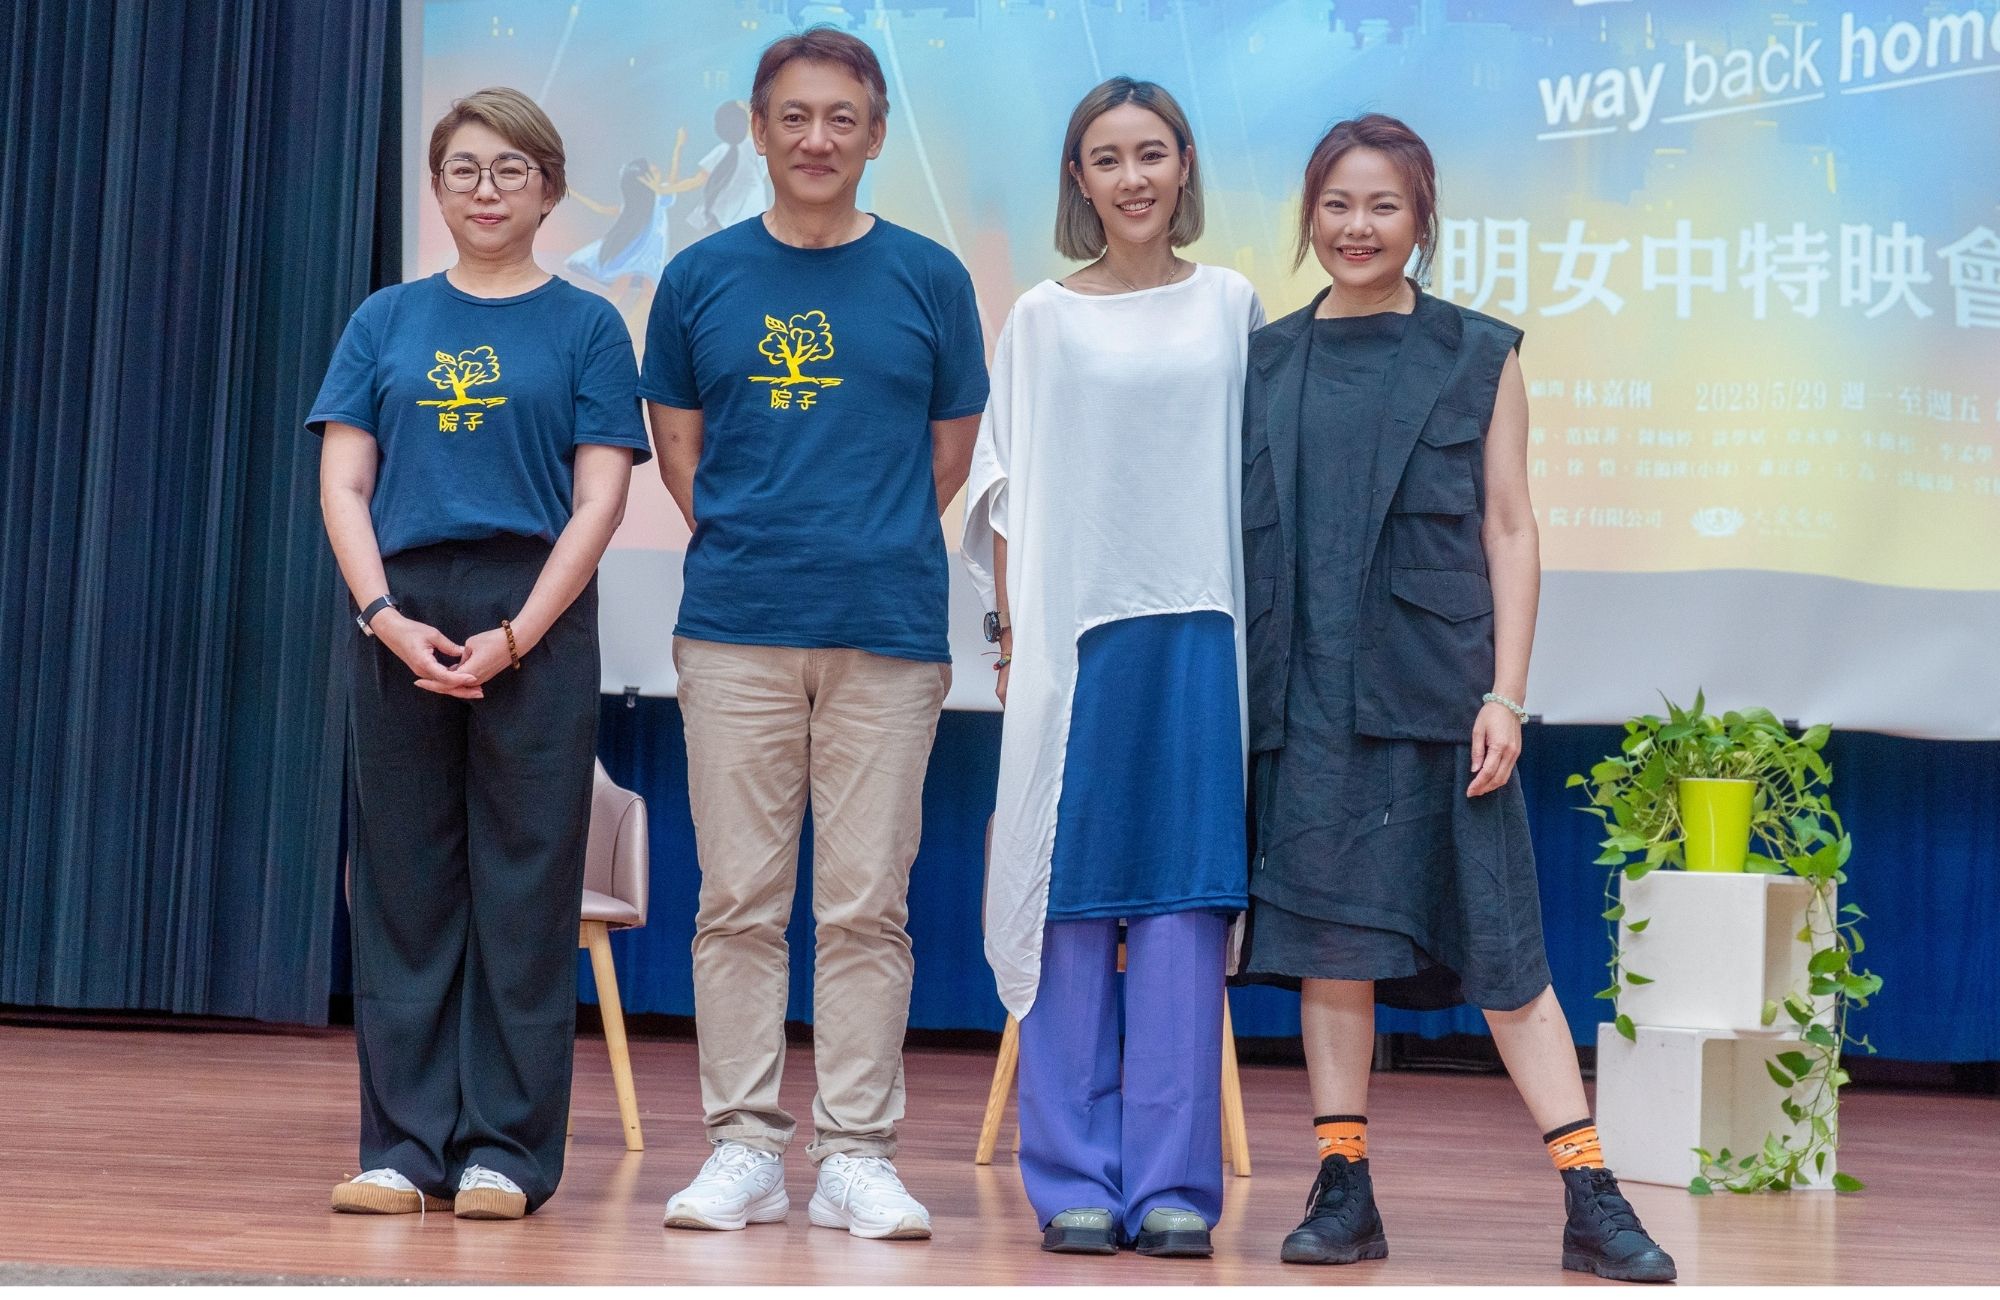 林嘉俐(右起)、方宥心、黃克義導演、吳怡然製作人出席《早點回家》曉明女中分享會